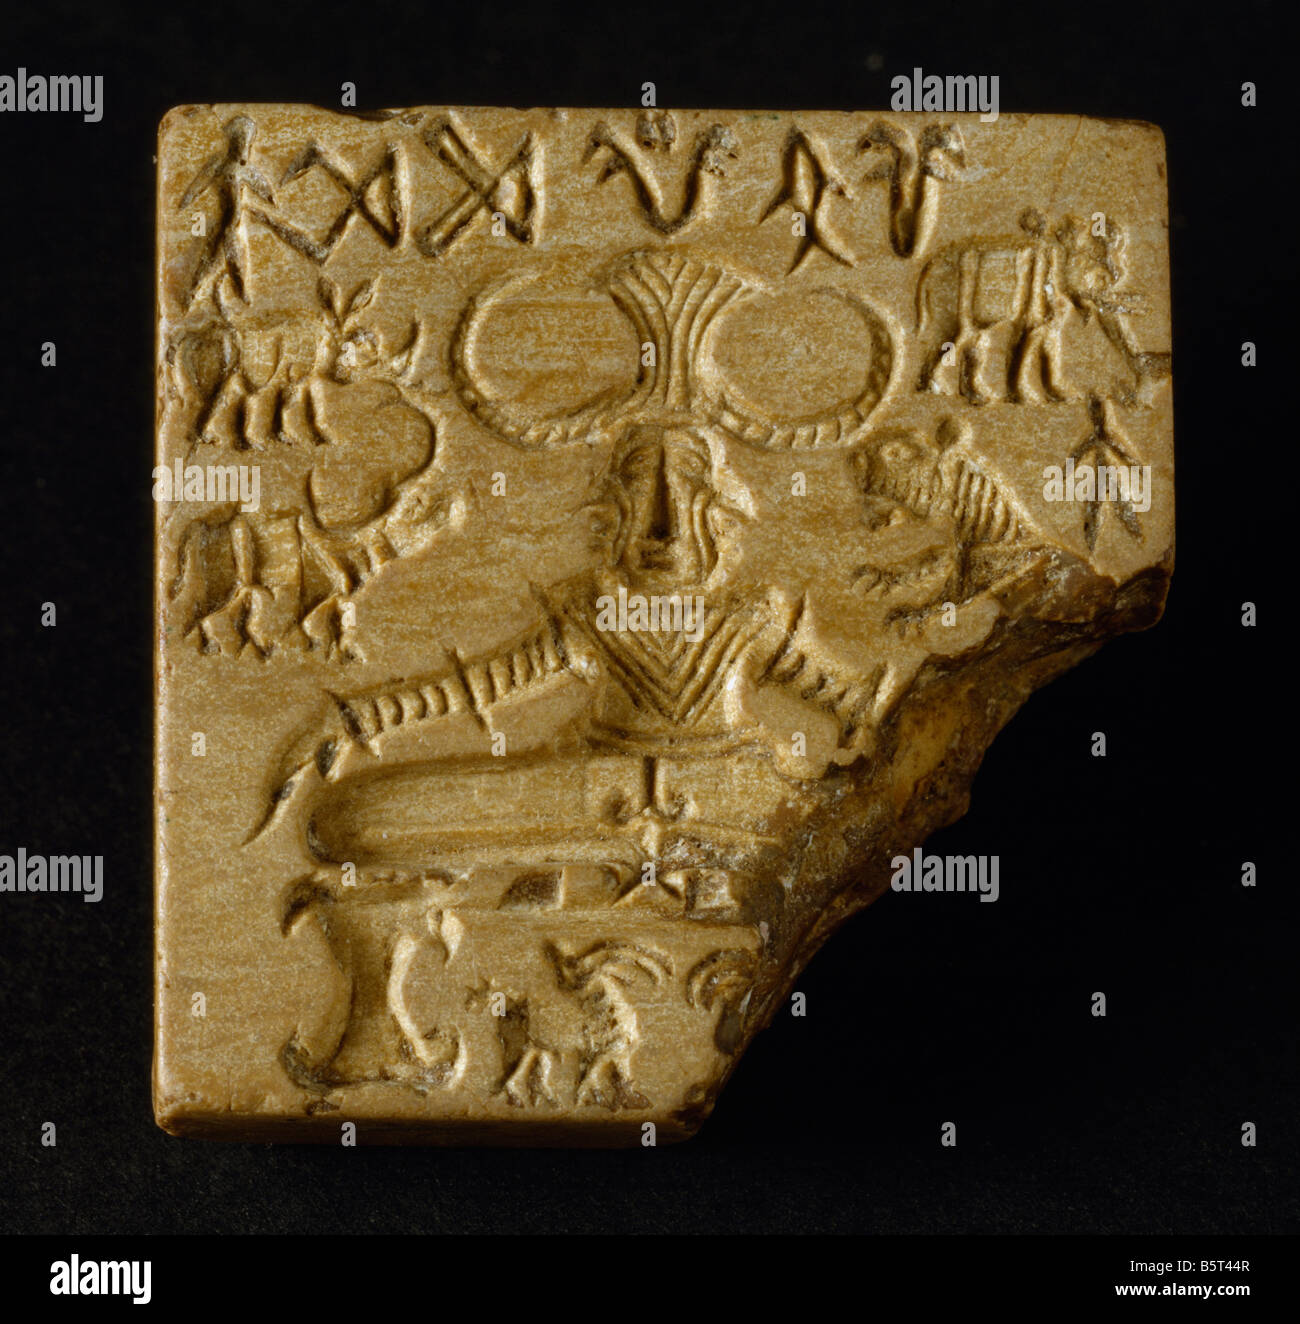 Dichtung von der Indus Senke-Zivilisation. Museum von Neu-Delhi Indien Stockfoto